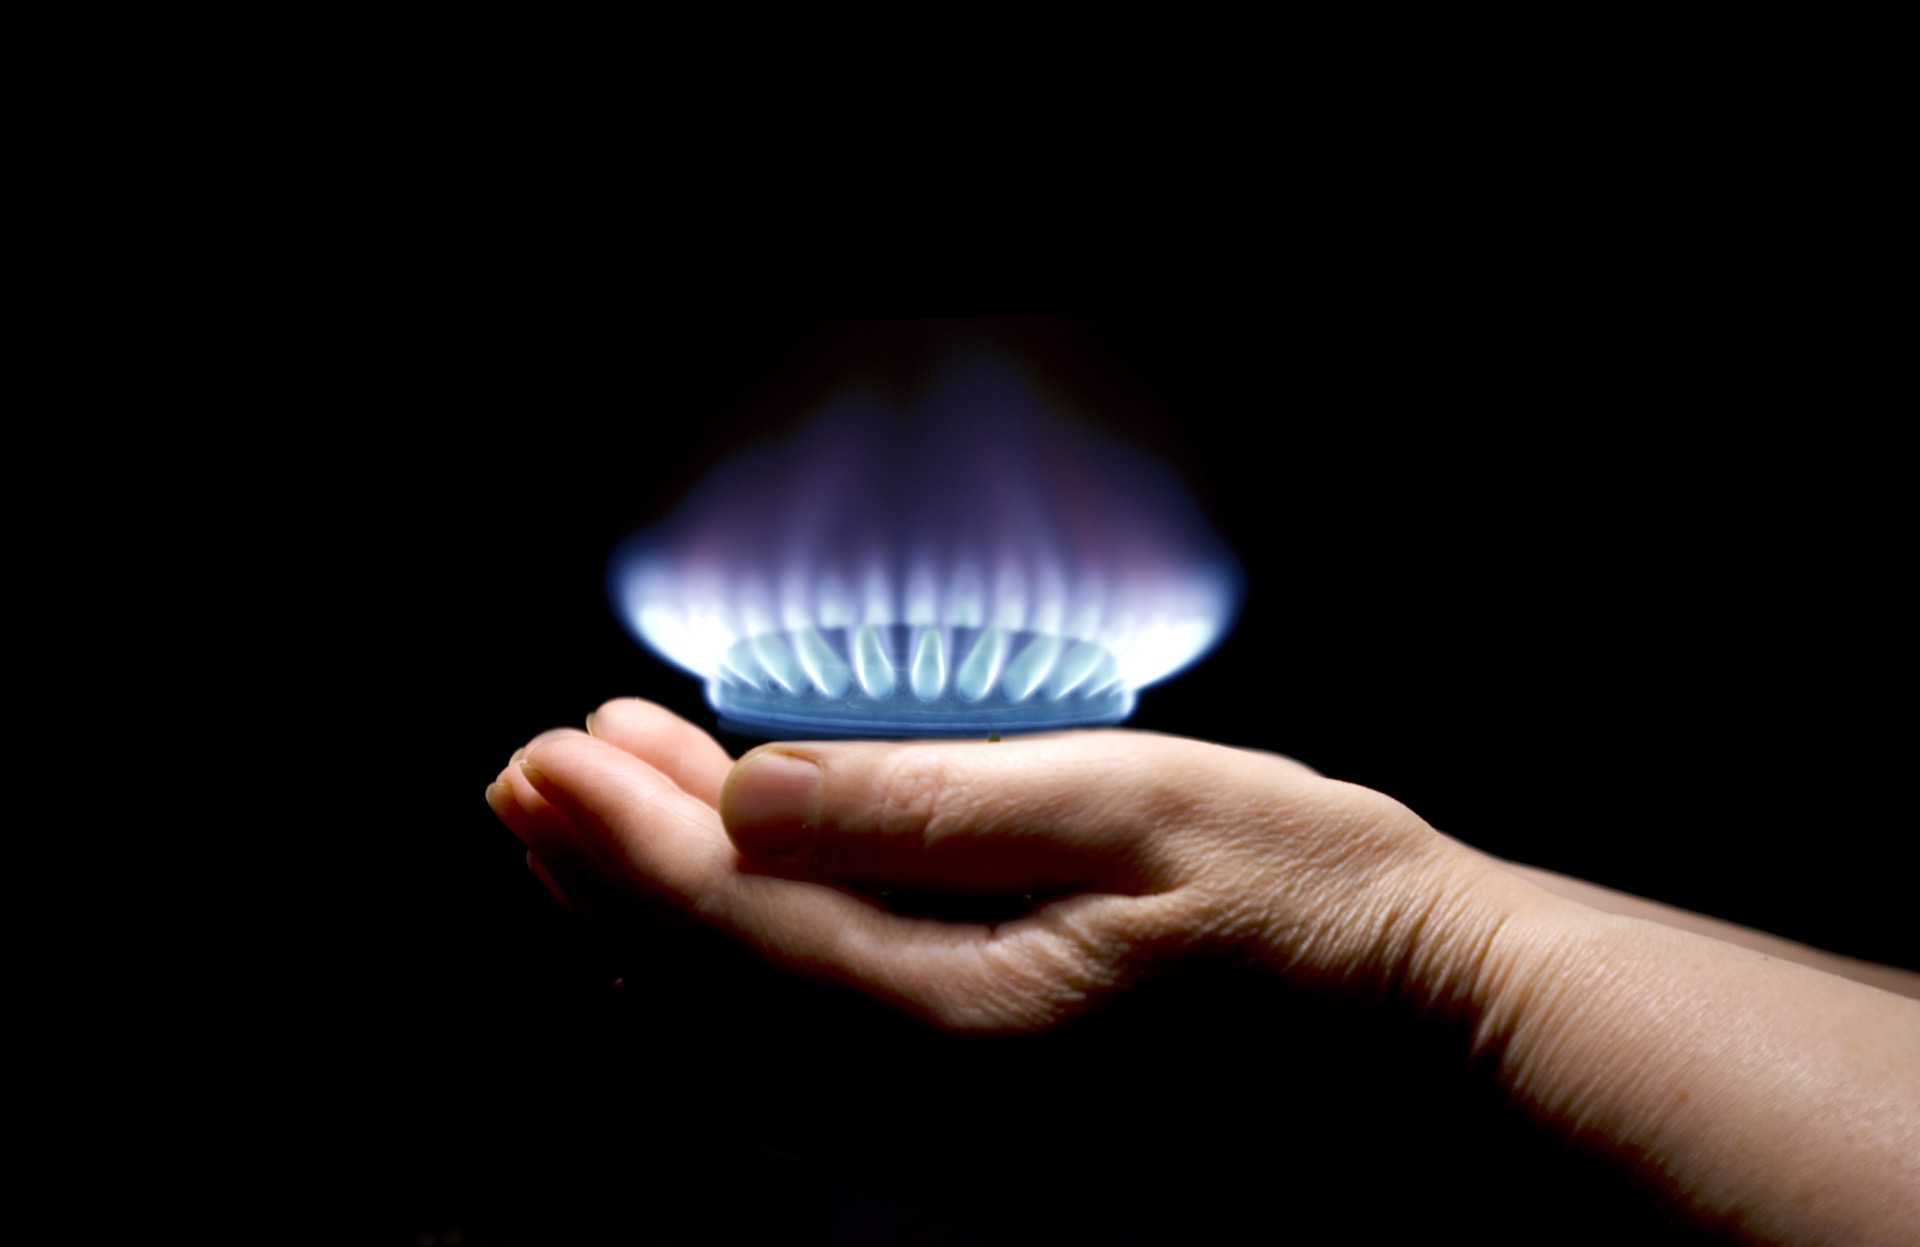 La privatisation de l’entreprise nationale GDF (Gaz de France) a ouvert la voie aux fournisseurs « alternatifs » qui se partagent aujourd'hui le marché du gaz naturel. © Pakhnyushchyy, Adobe Stock 